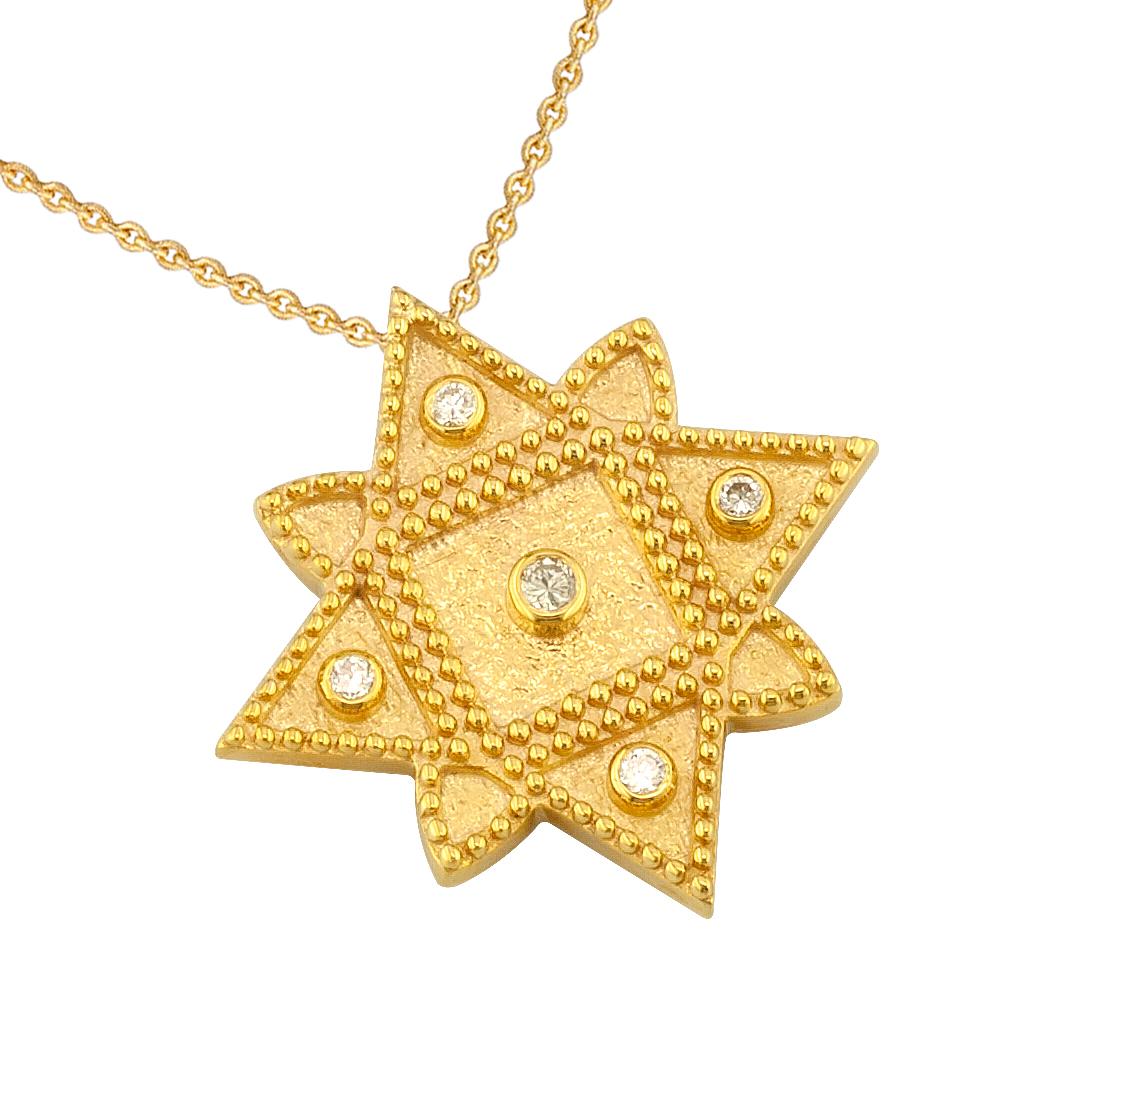 Diese S.Georgios Designerkette aus 18 Karat Gelbgold ist mikroskopisch genau mit handgefertigter Perlengranulation verziert und mit einem einzigartigen Samtuntergrund versehen. Diese wunderschöne Sonnenschliff-Halskette hat 5 weiße Diamanten im